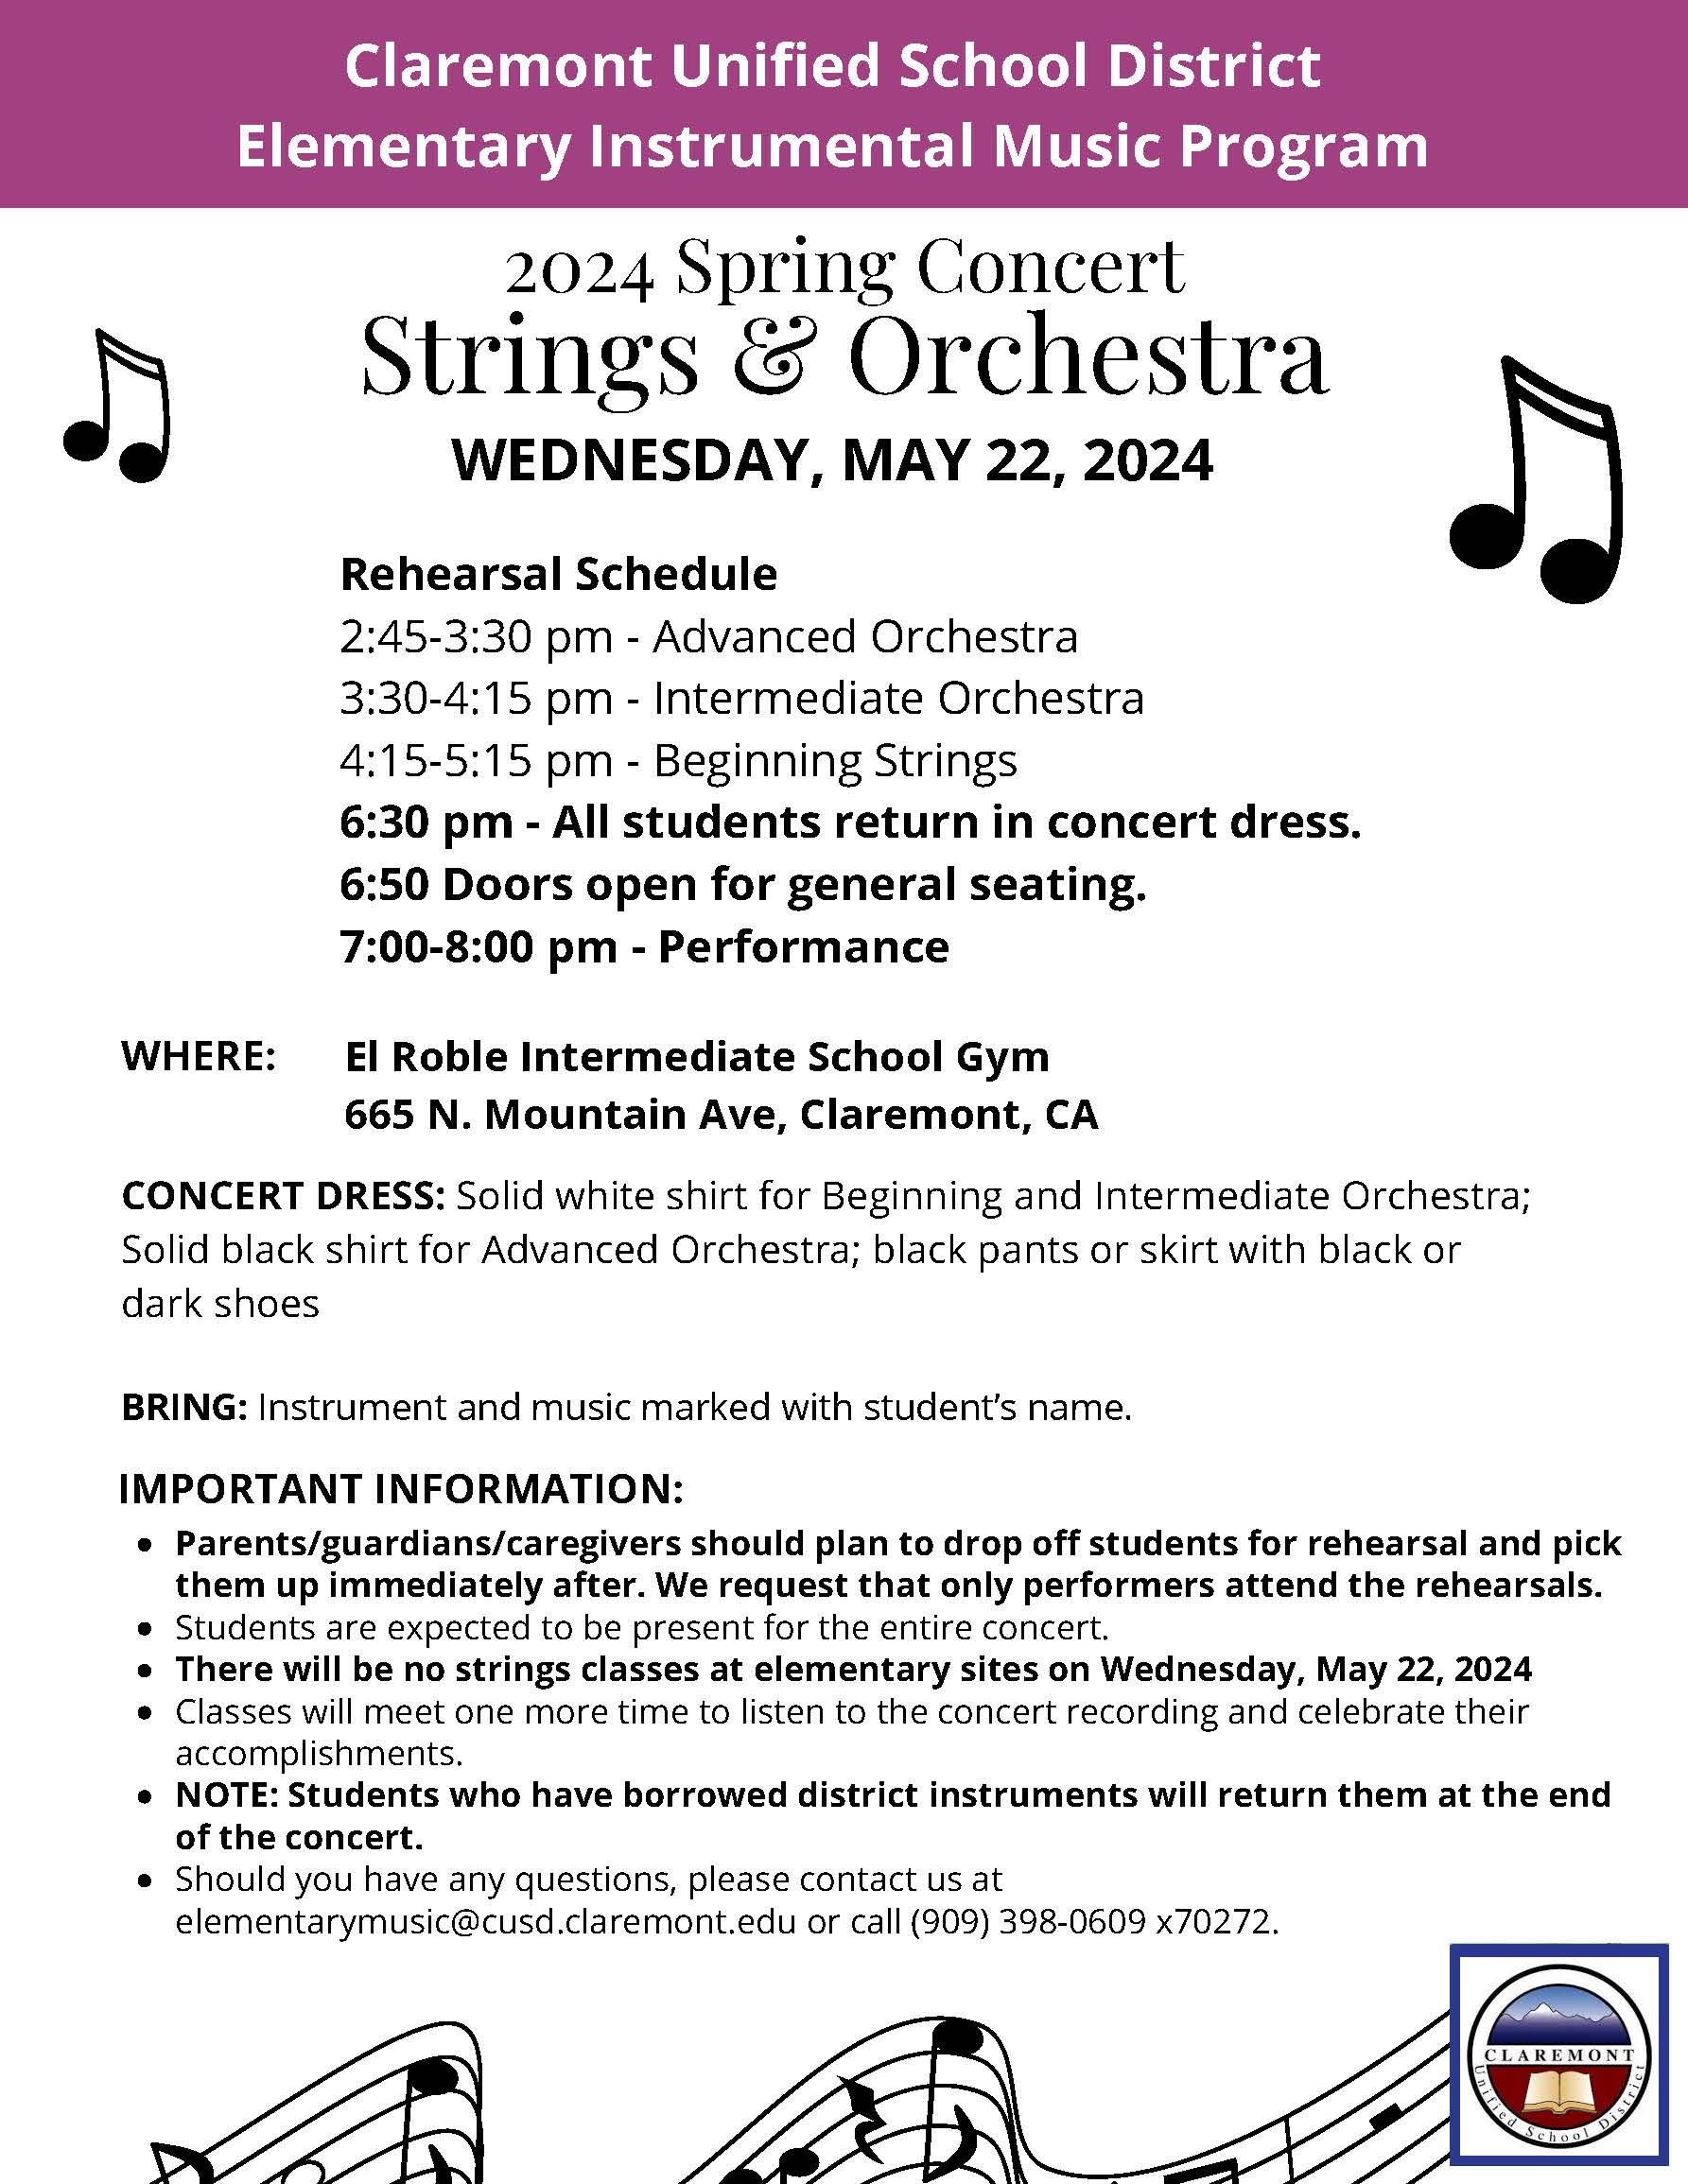 Strings Spring Concert Flyer 2024